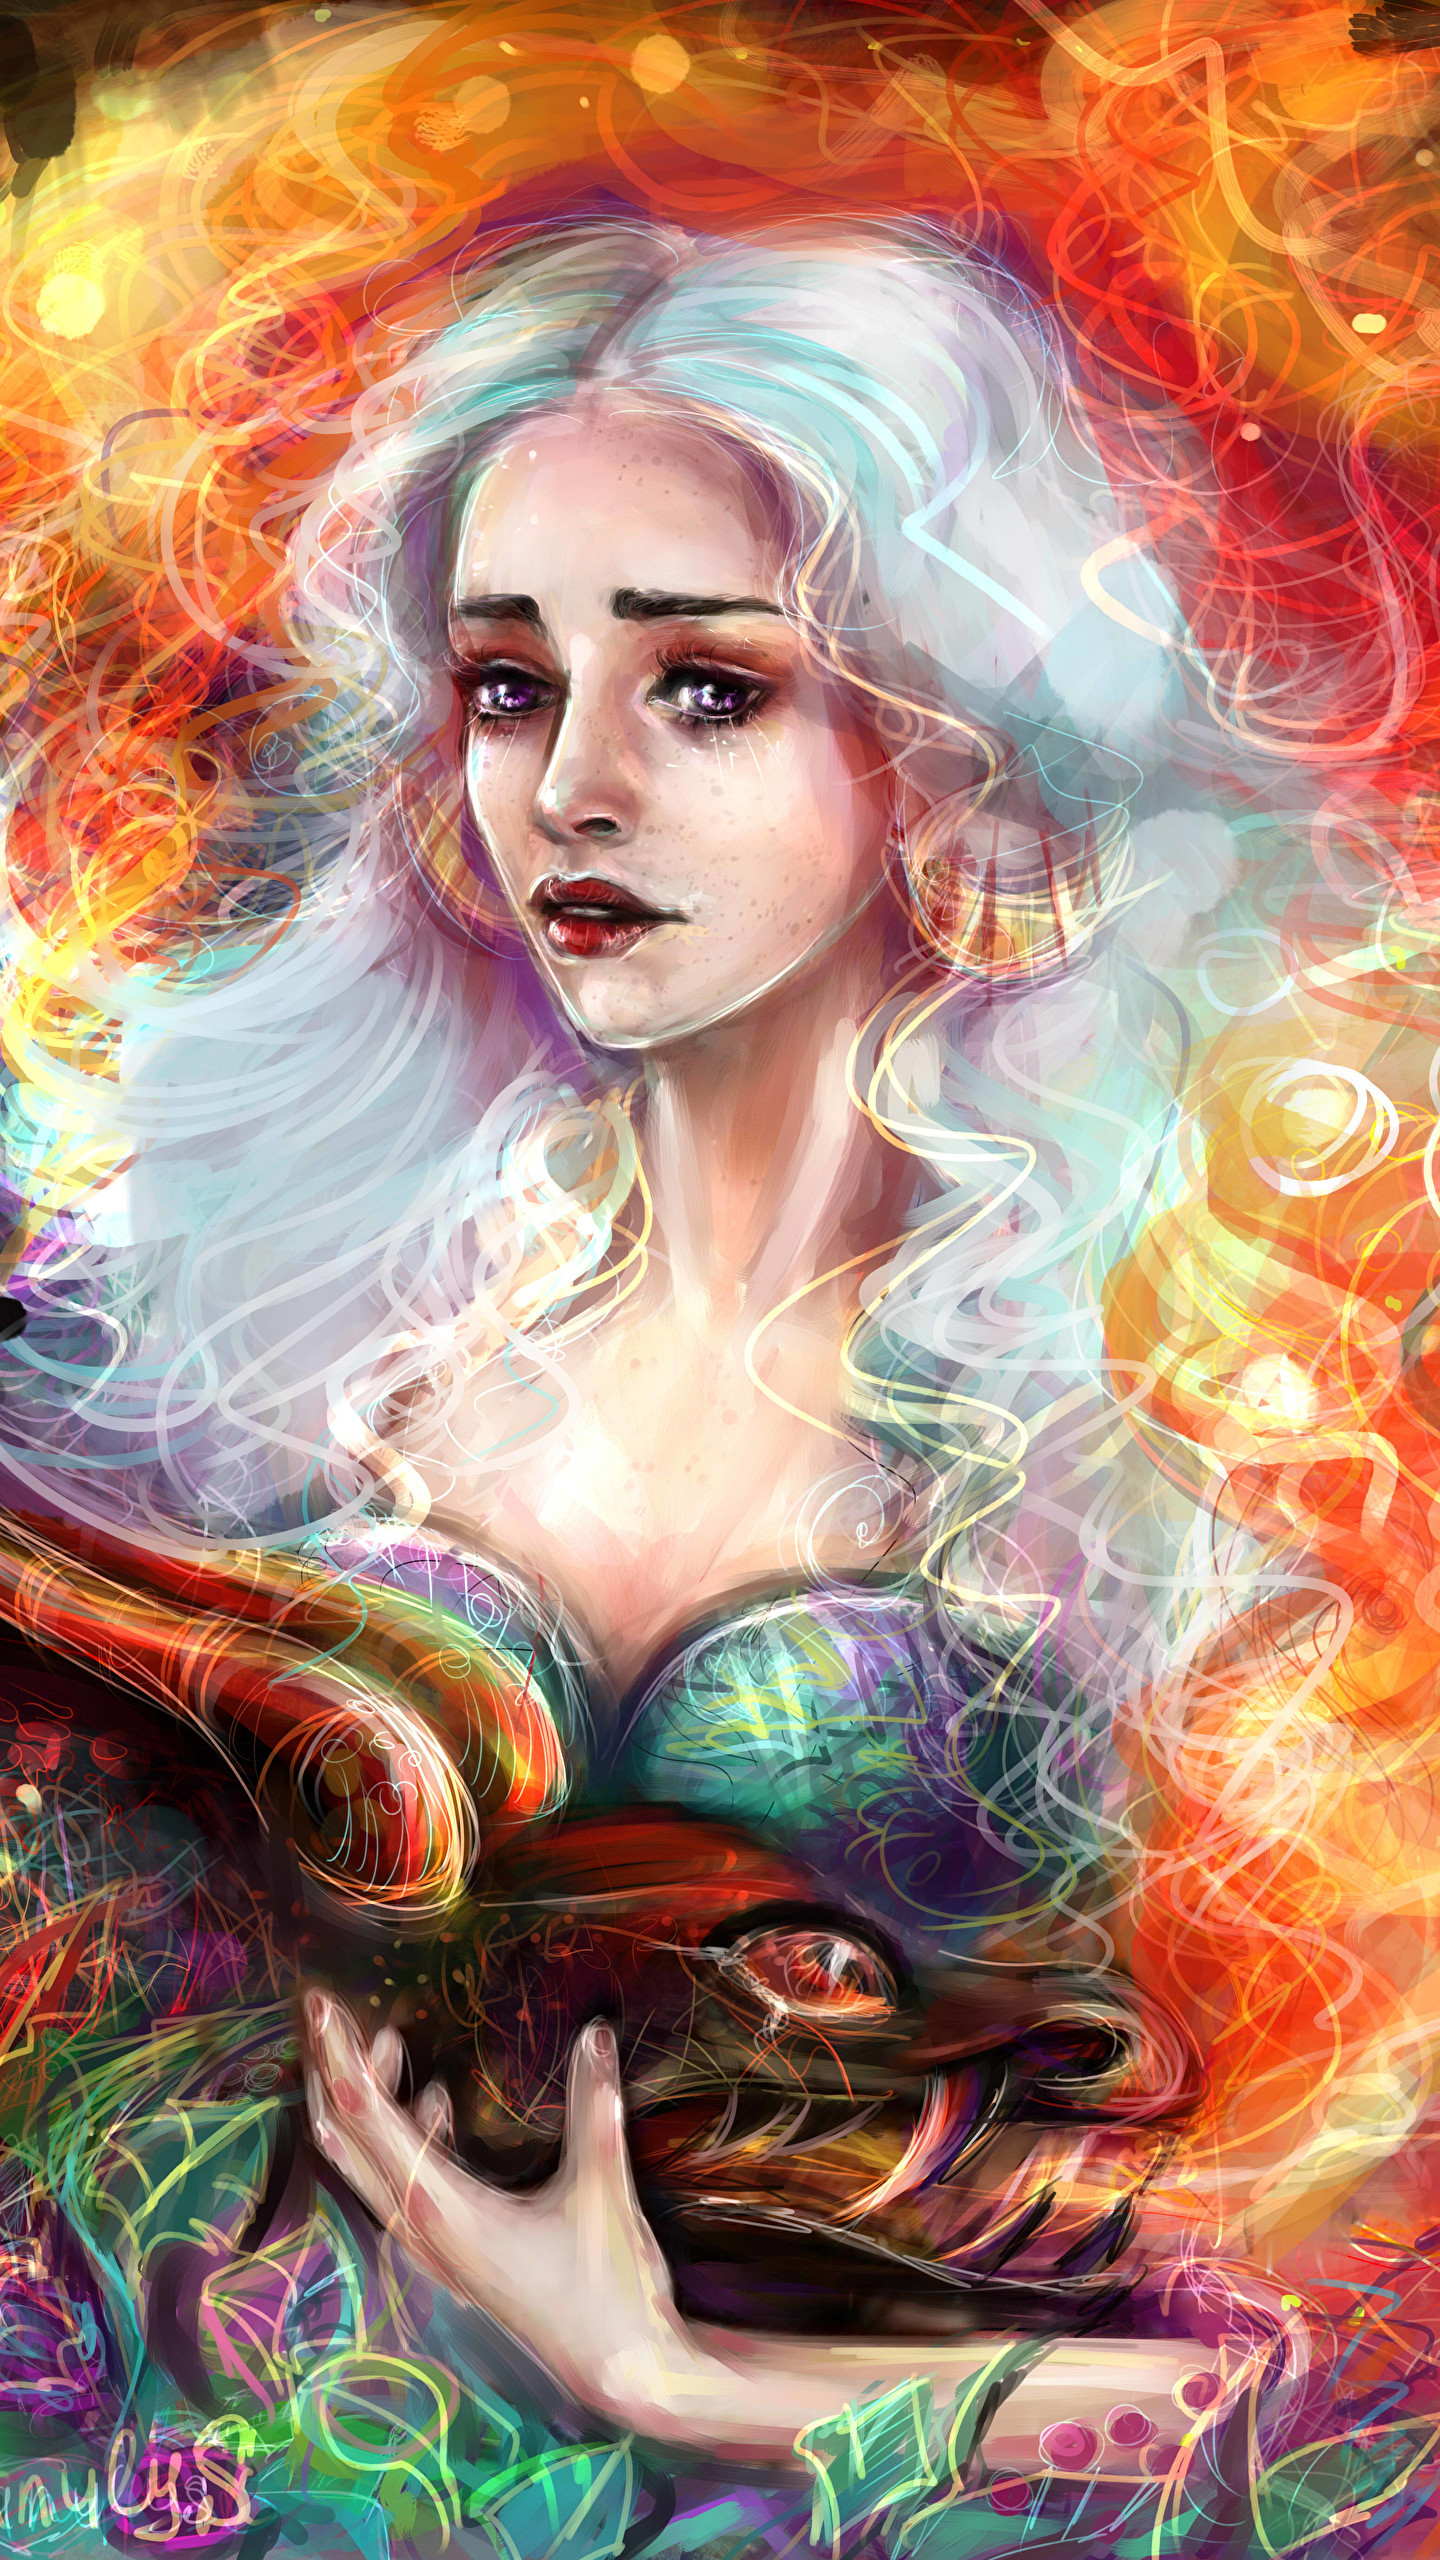 sfondo di emilia clarke game of thrones,cg artwork,illustrazione,arte,personaggio fittizio,mitologia